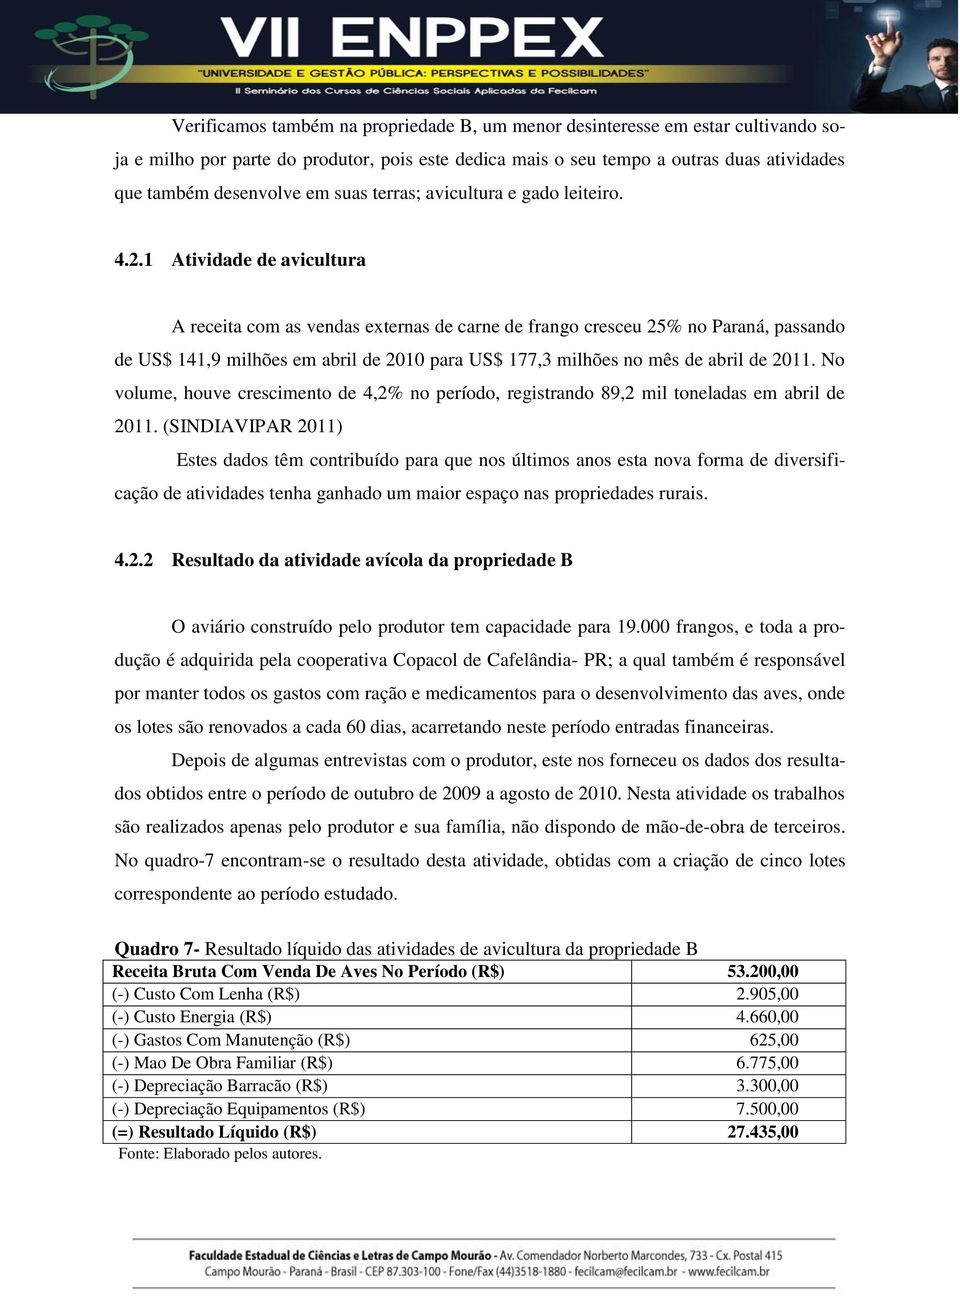 1 Atividade de avicultura A receita com as vendas externas de carne de frango cresceu 25% no Paraná, passando de US$ 141,9 milhões em abril de 2010 para US$ 177,3 milhões no mês de abril de 2011.